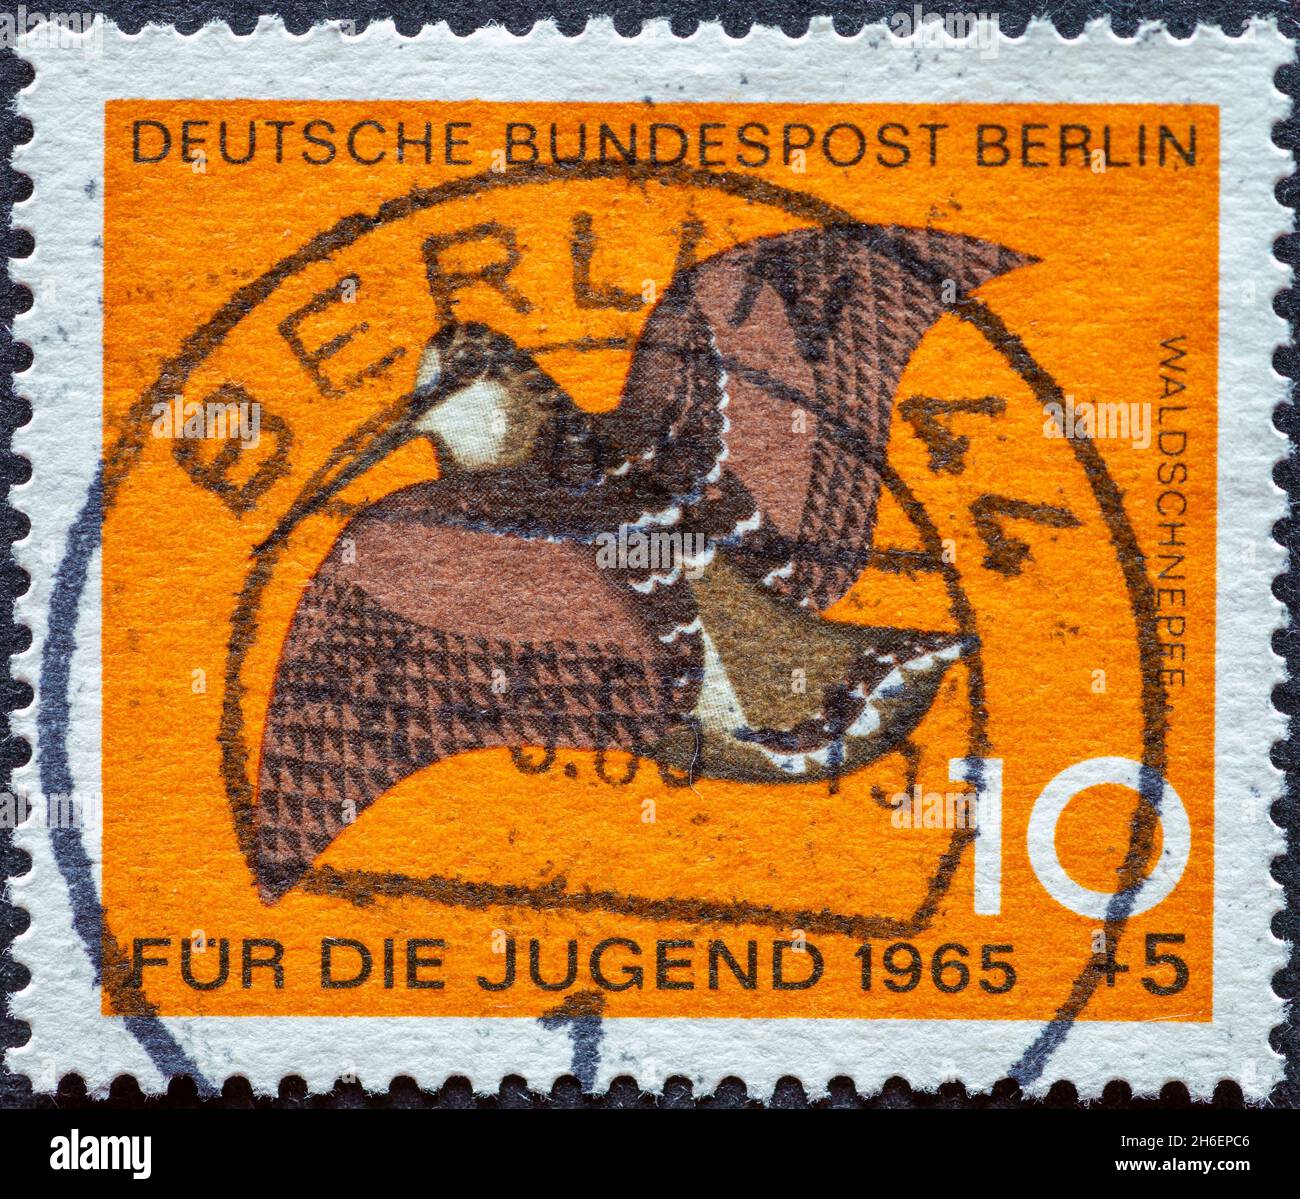 ALLEMAGNE, Berlin - VERS 1965: Timbre-poste de l'Allemagne, Berlin montrant des oiseaux sauvages spéciaux: woodcock organisme de bienfaisance timbre-poste pour les jeunes Banque D'Images